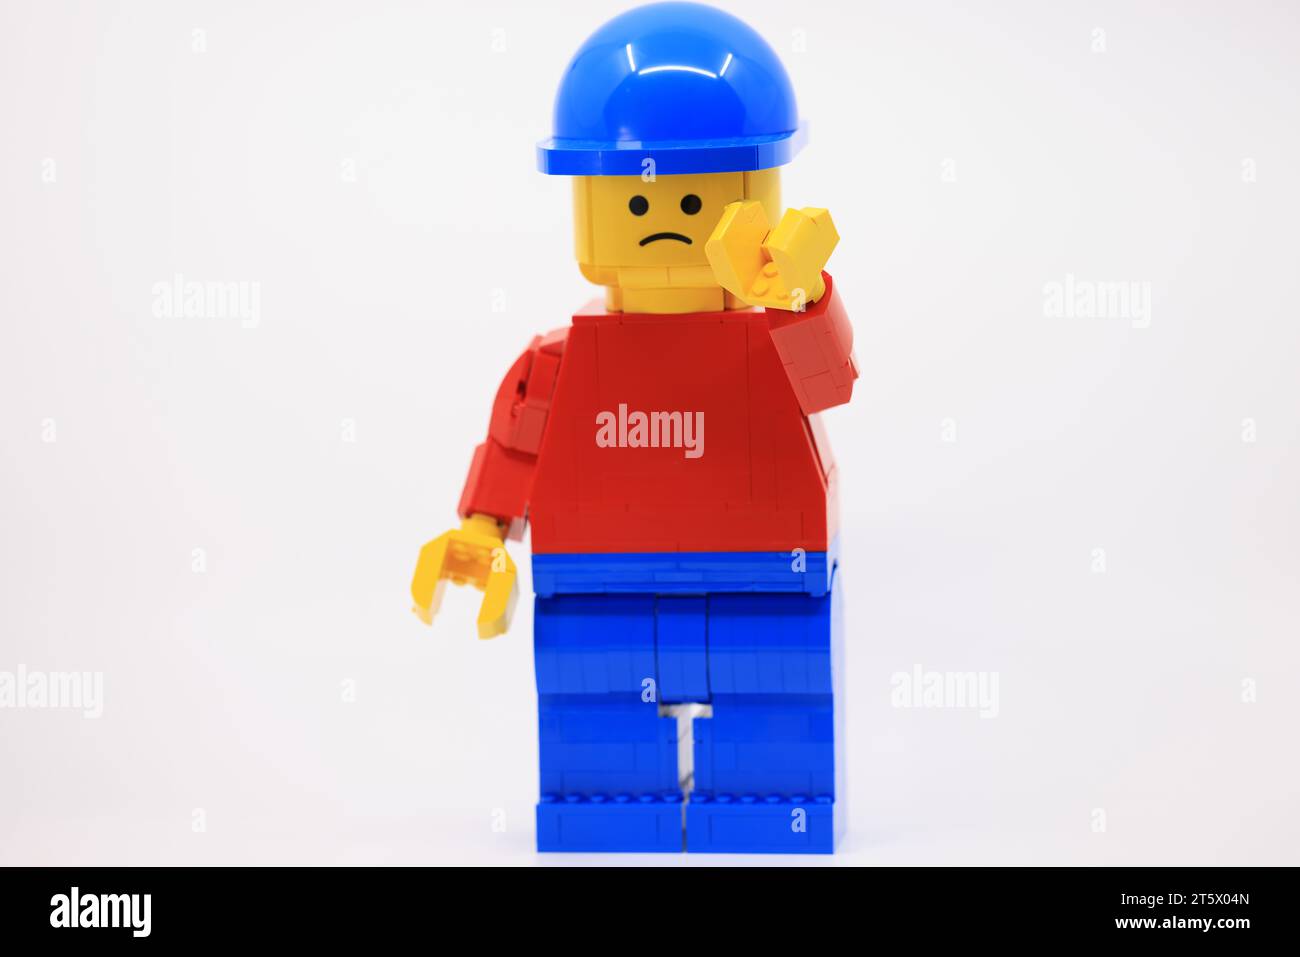 Mascota de Lego gigante azul rojo y amarillo. Traje de lego